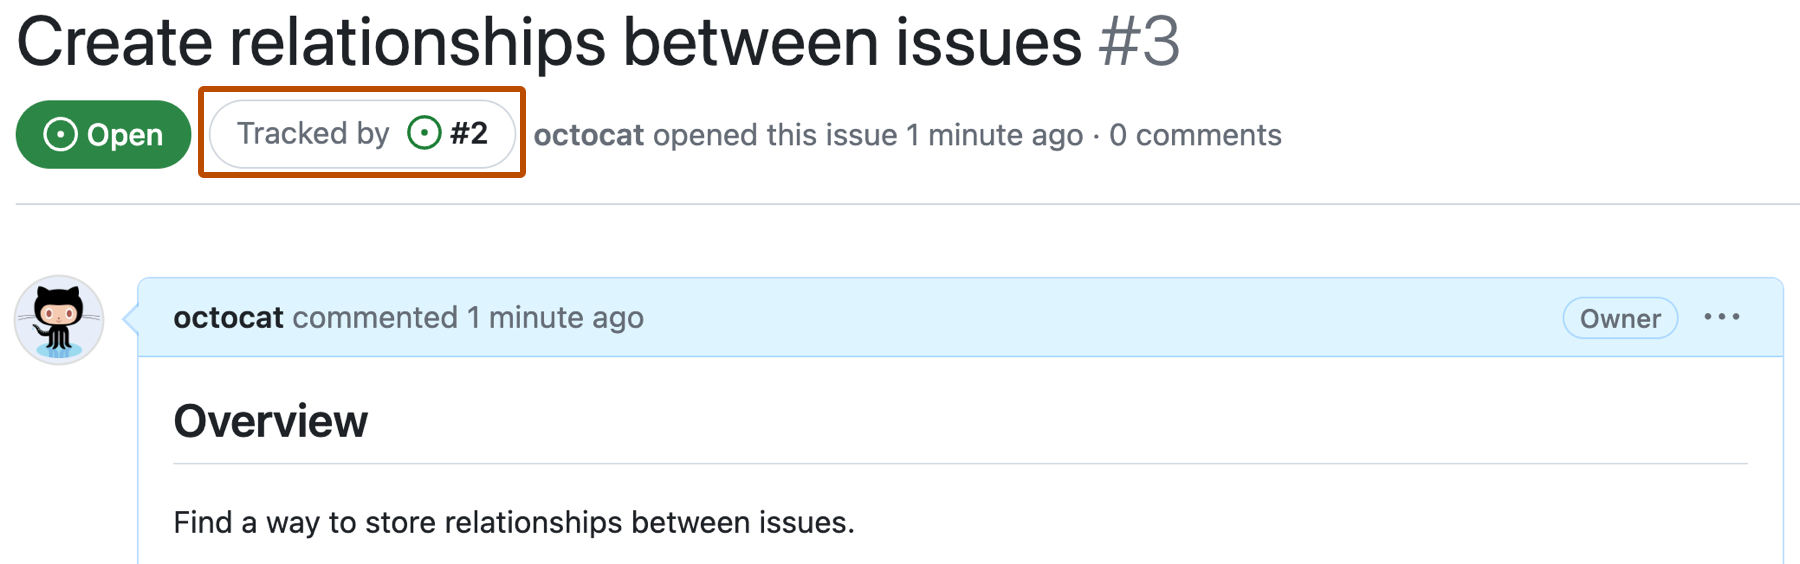 Captura de pantalla de un problema de GitHub denominado "Crear relaciones entre problemas" y el problema numerado 3. Un botón debajo del título del problema que dice "Tracked by issue #2" (Seguimiento por problema n.º 2) se describe en naranja oscuro.